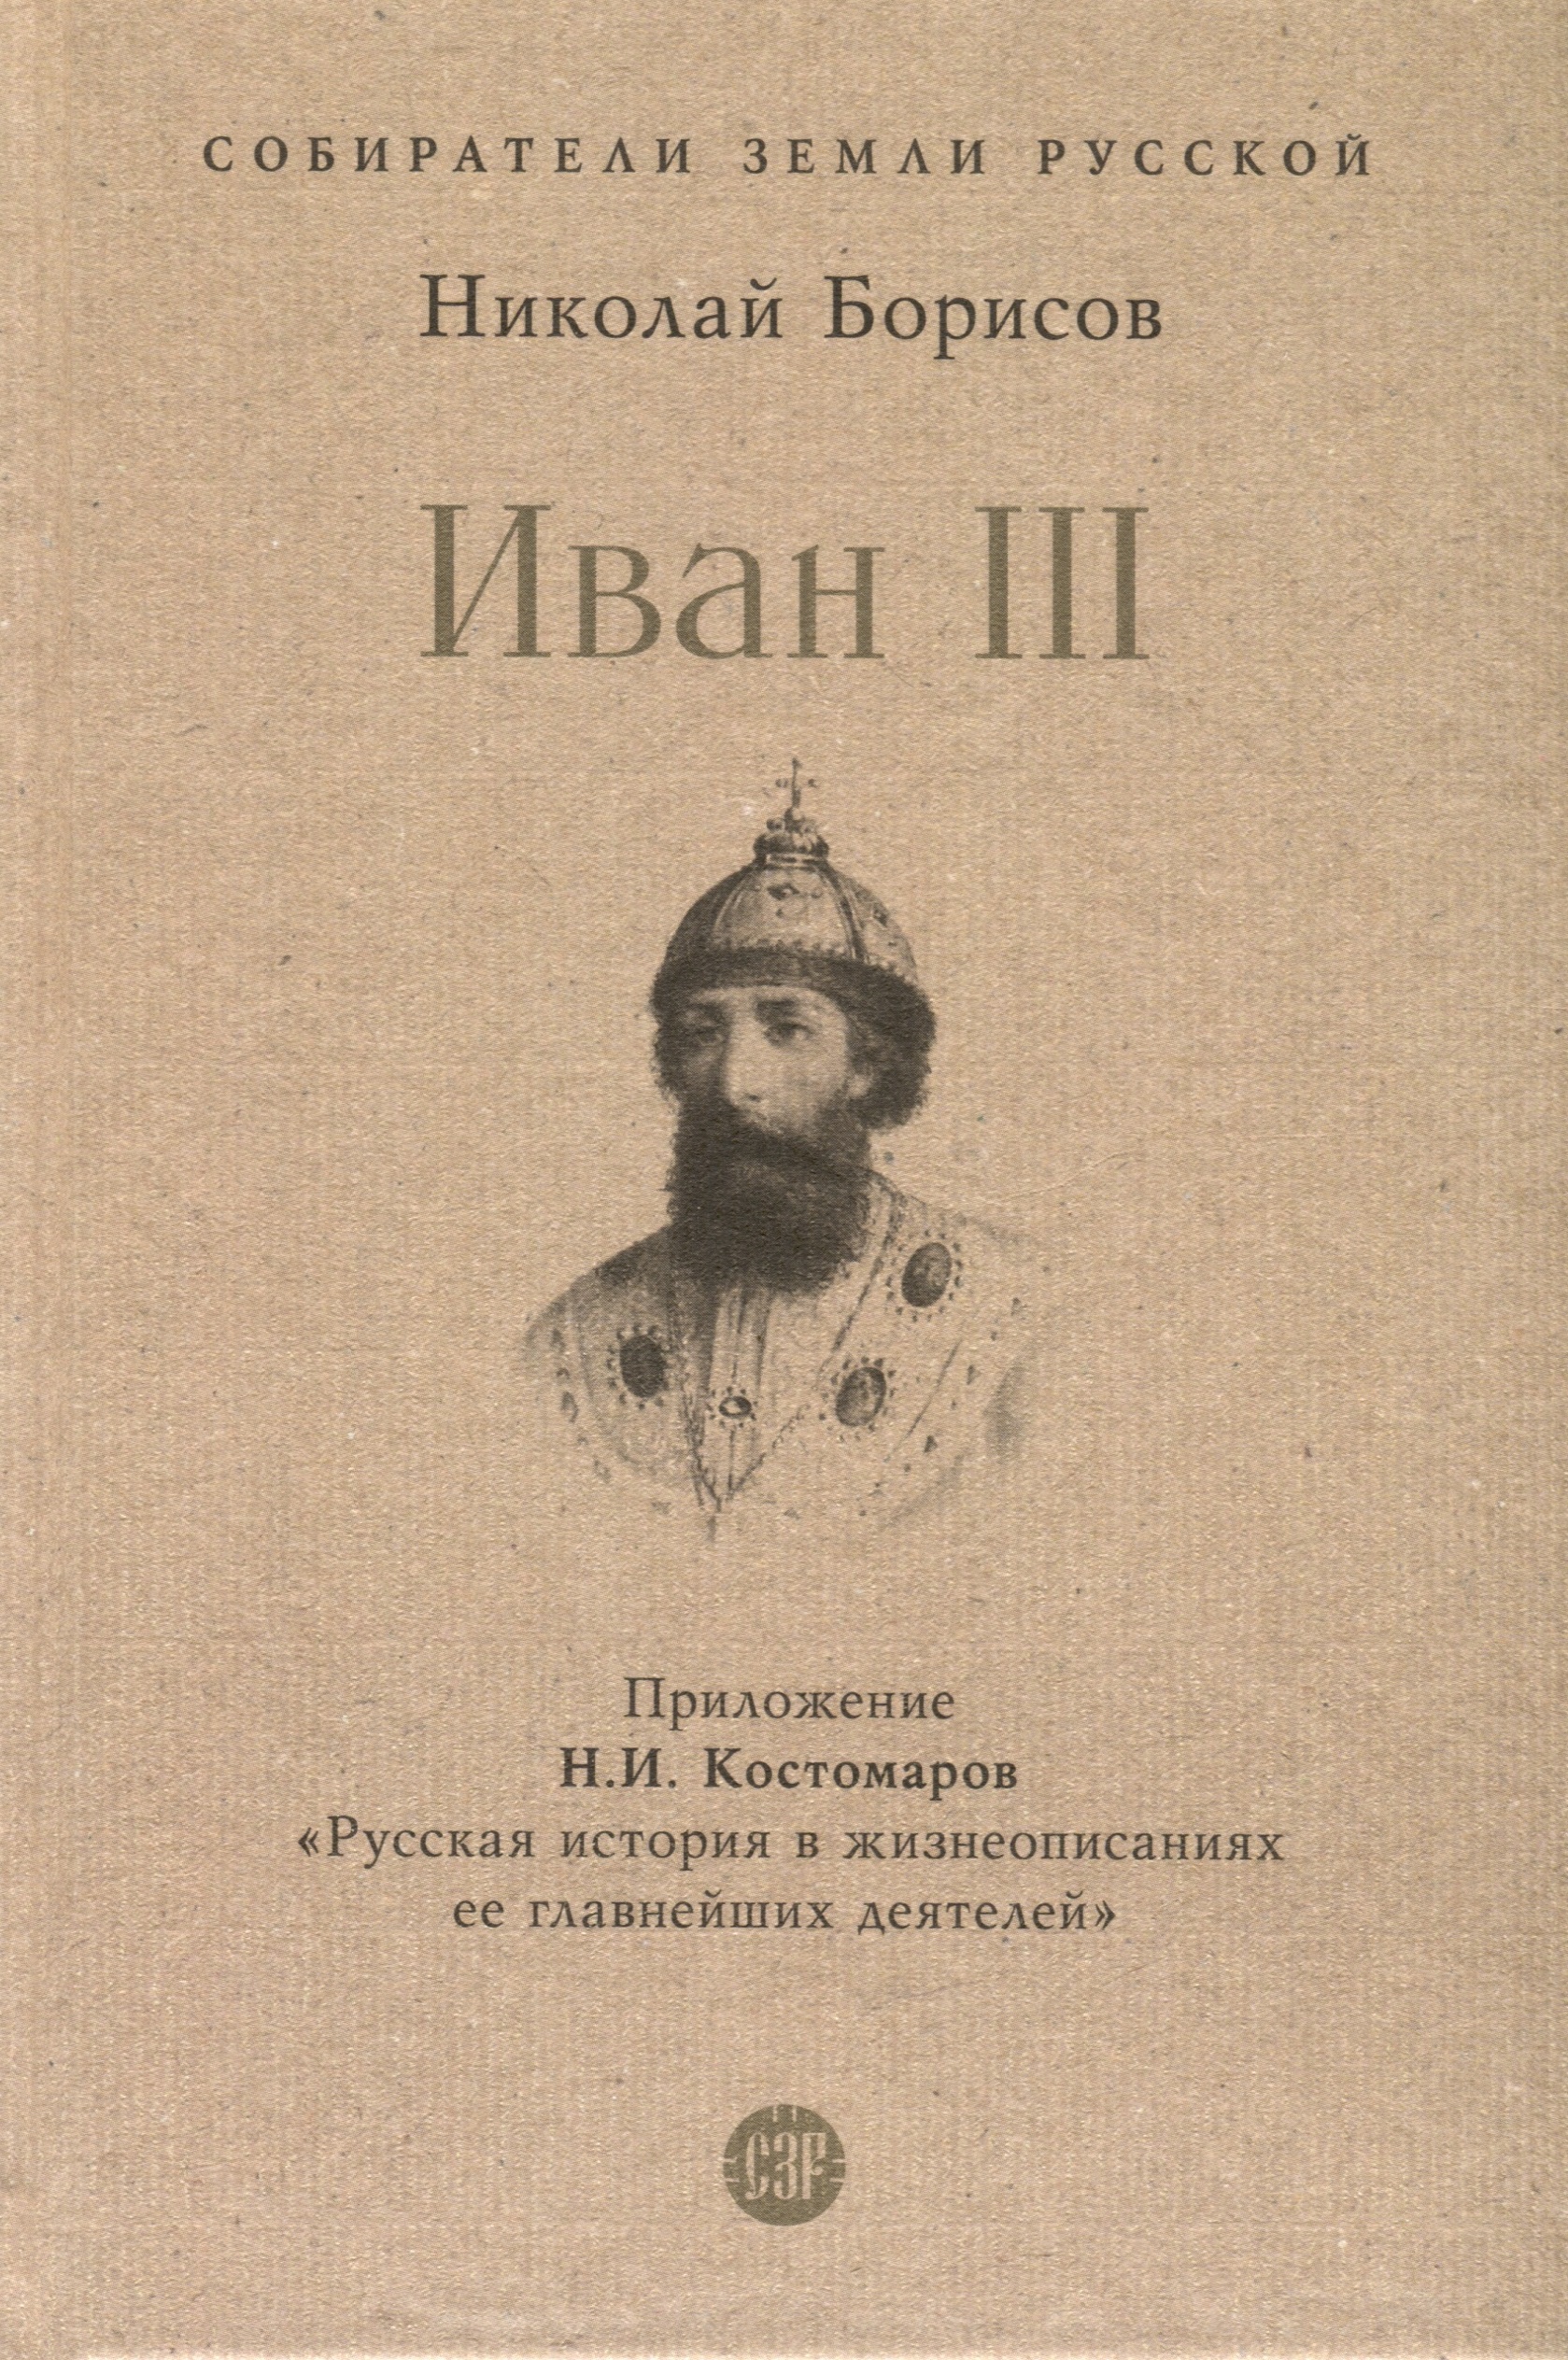 Борисов Николай Сергеевич Иван III мартиросова мария альбертовна иван iii государь всея руси